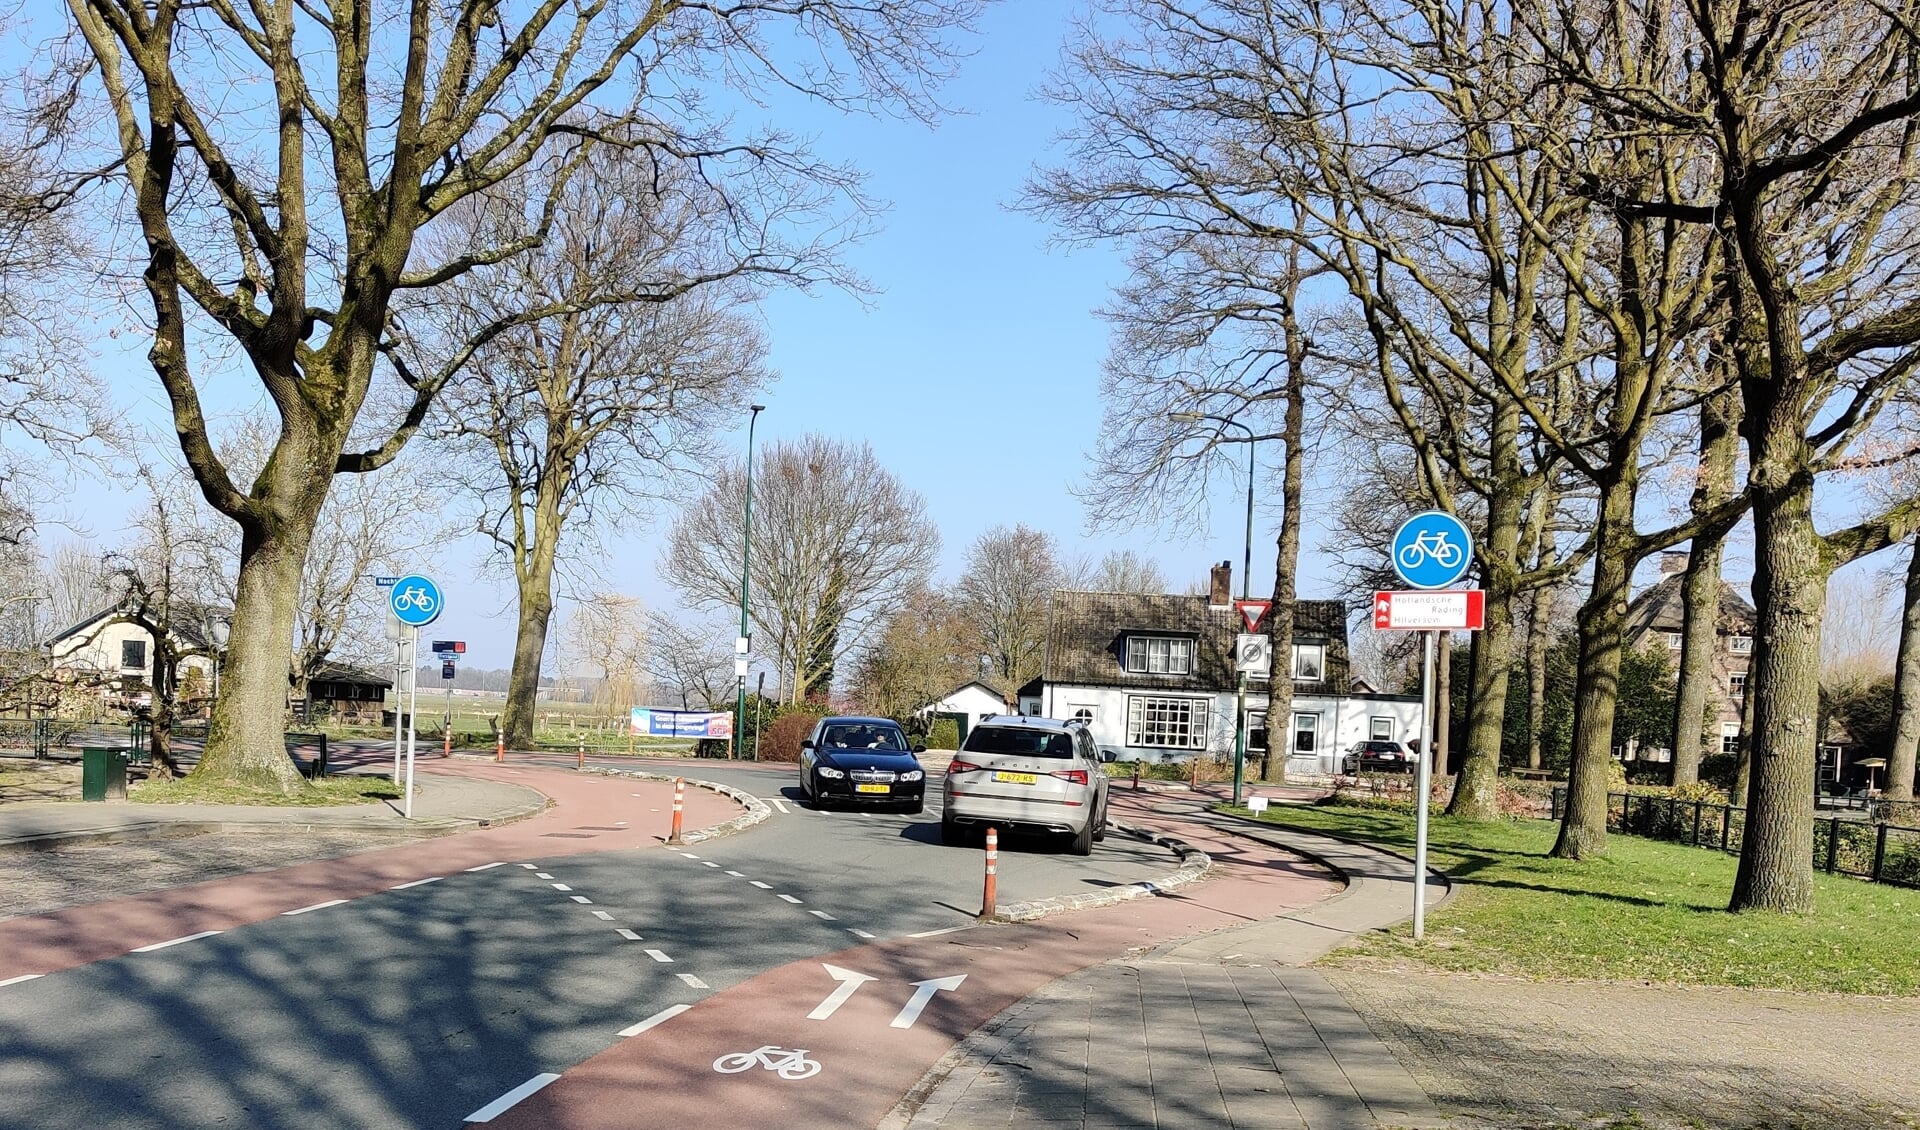 Menig gemeenteraadsfractie vond (ook) al in 2018 het kruispunt Dorpsweg / Nachtegaallaan in Maartensdijk geen succes; het is er onoverzichtelijk, onlogisch, gevaarlijk en het verkeer stroomt niet goed door. Eén gemeentelijke verkiezingsronde verder is er nog niets veranderd.